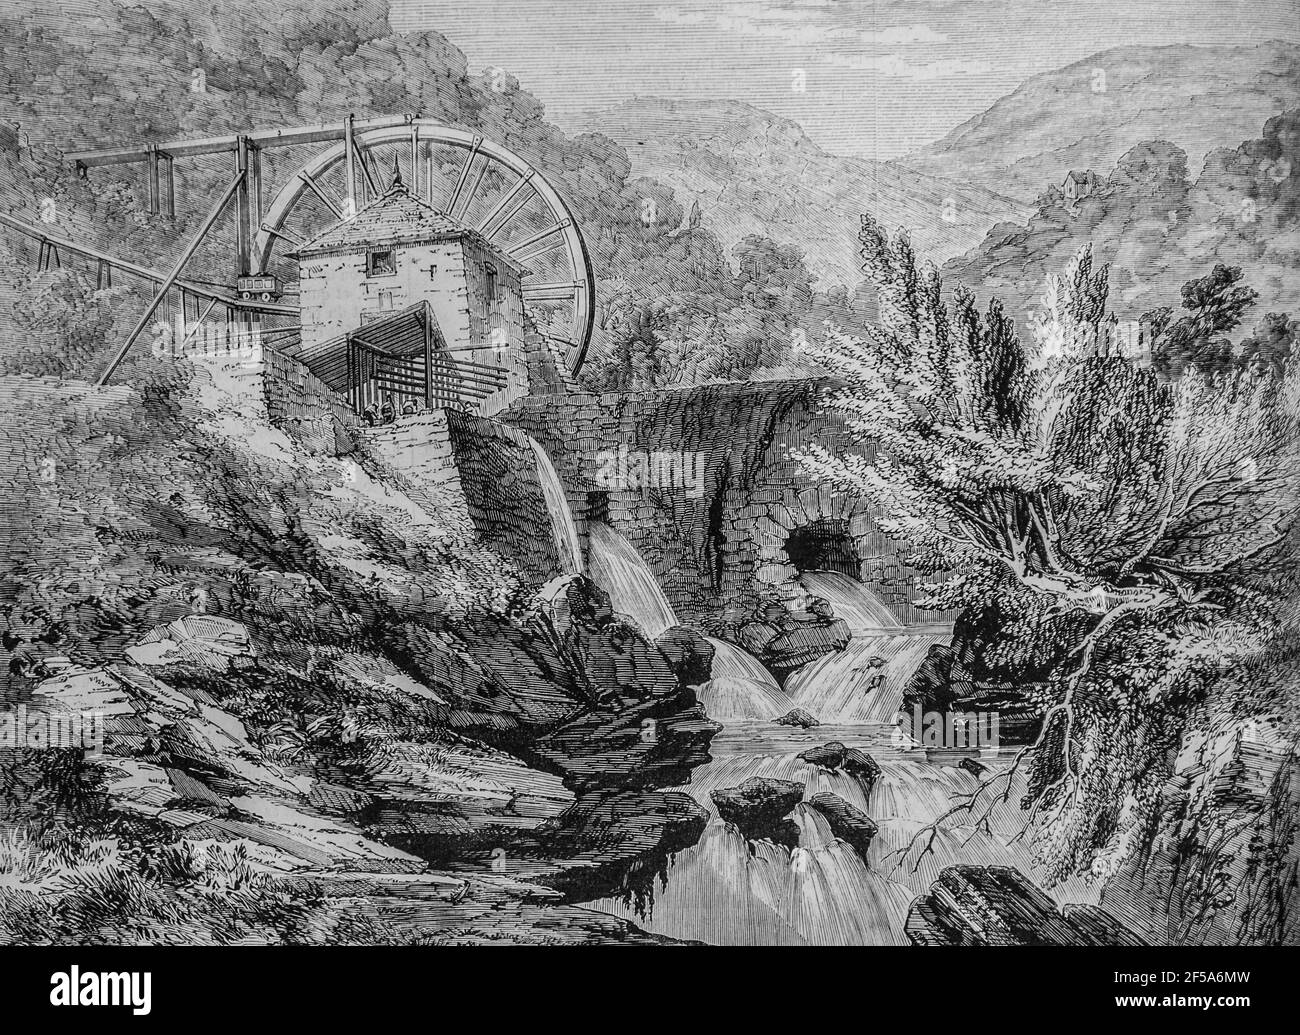 la Mine d'Or de vigra dans le Pays de galles ,l'univers illustre,editeur michel Levy 1868 Stockfoto